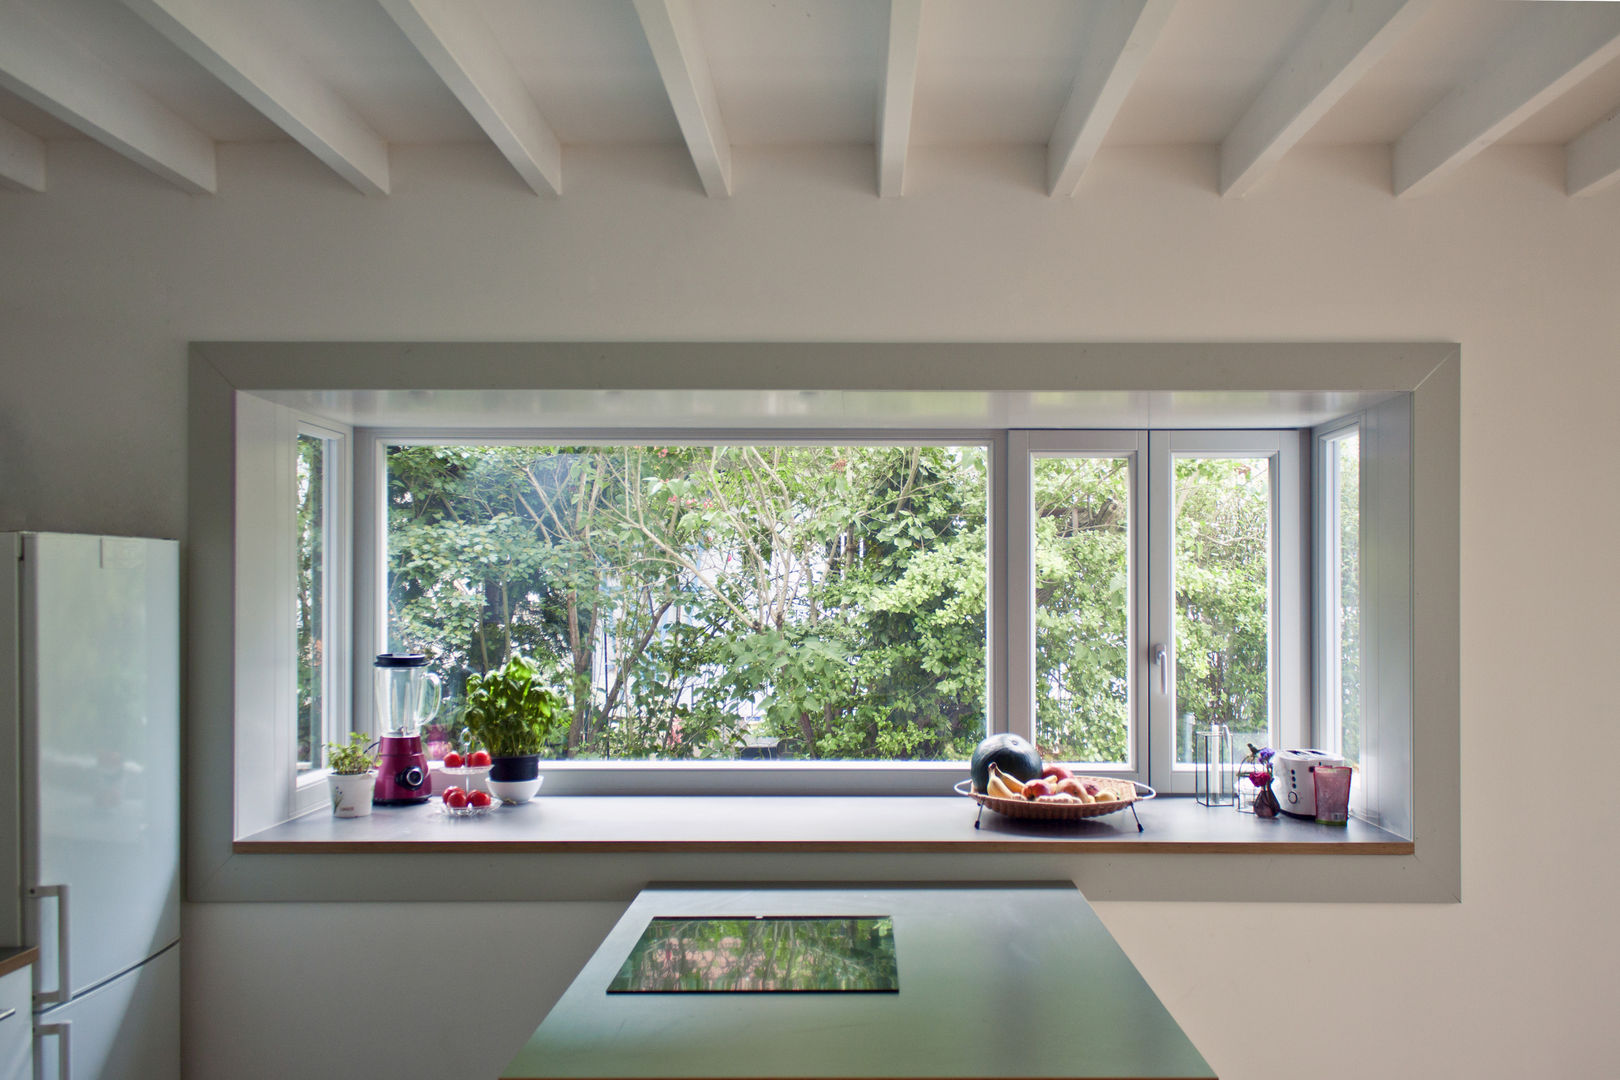 kitchen & bay window brandt+simon architekten Modern Kitchen bay window,open space kitchen,semi-detached house,extension